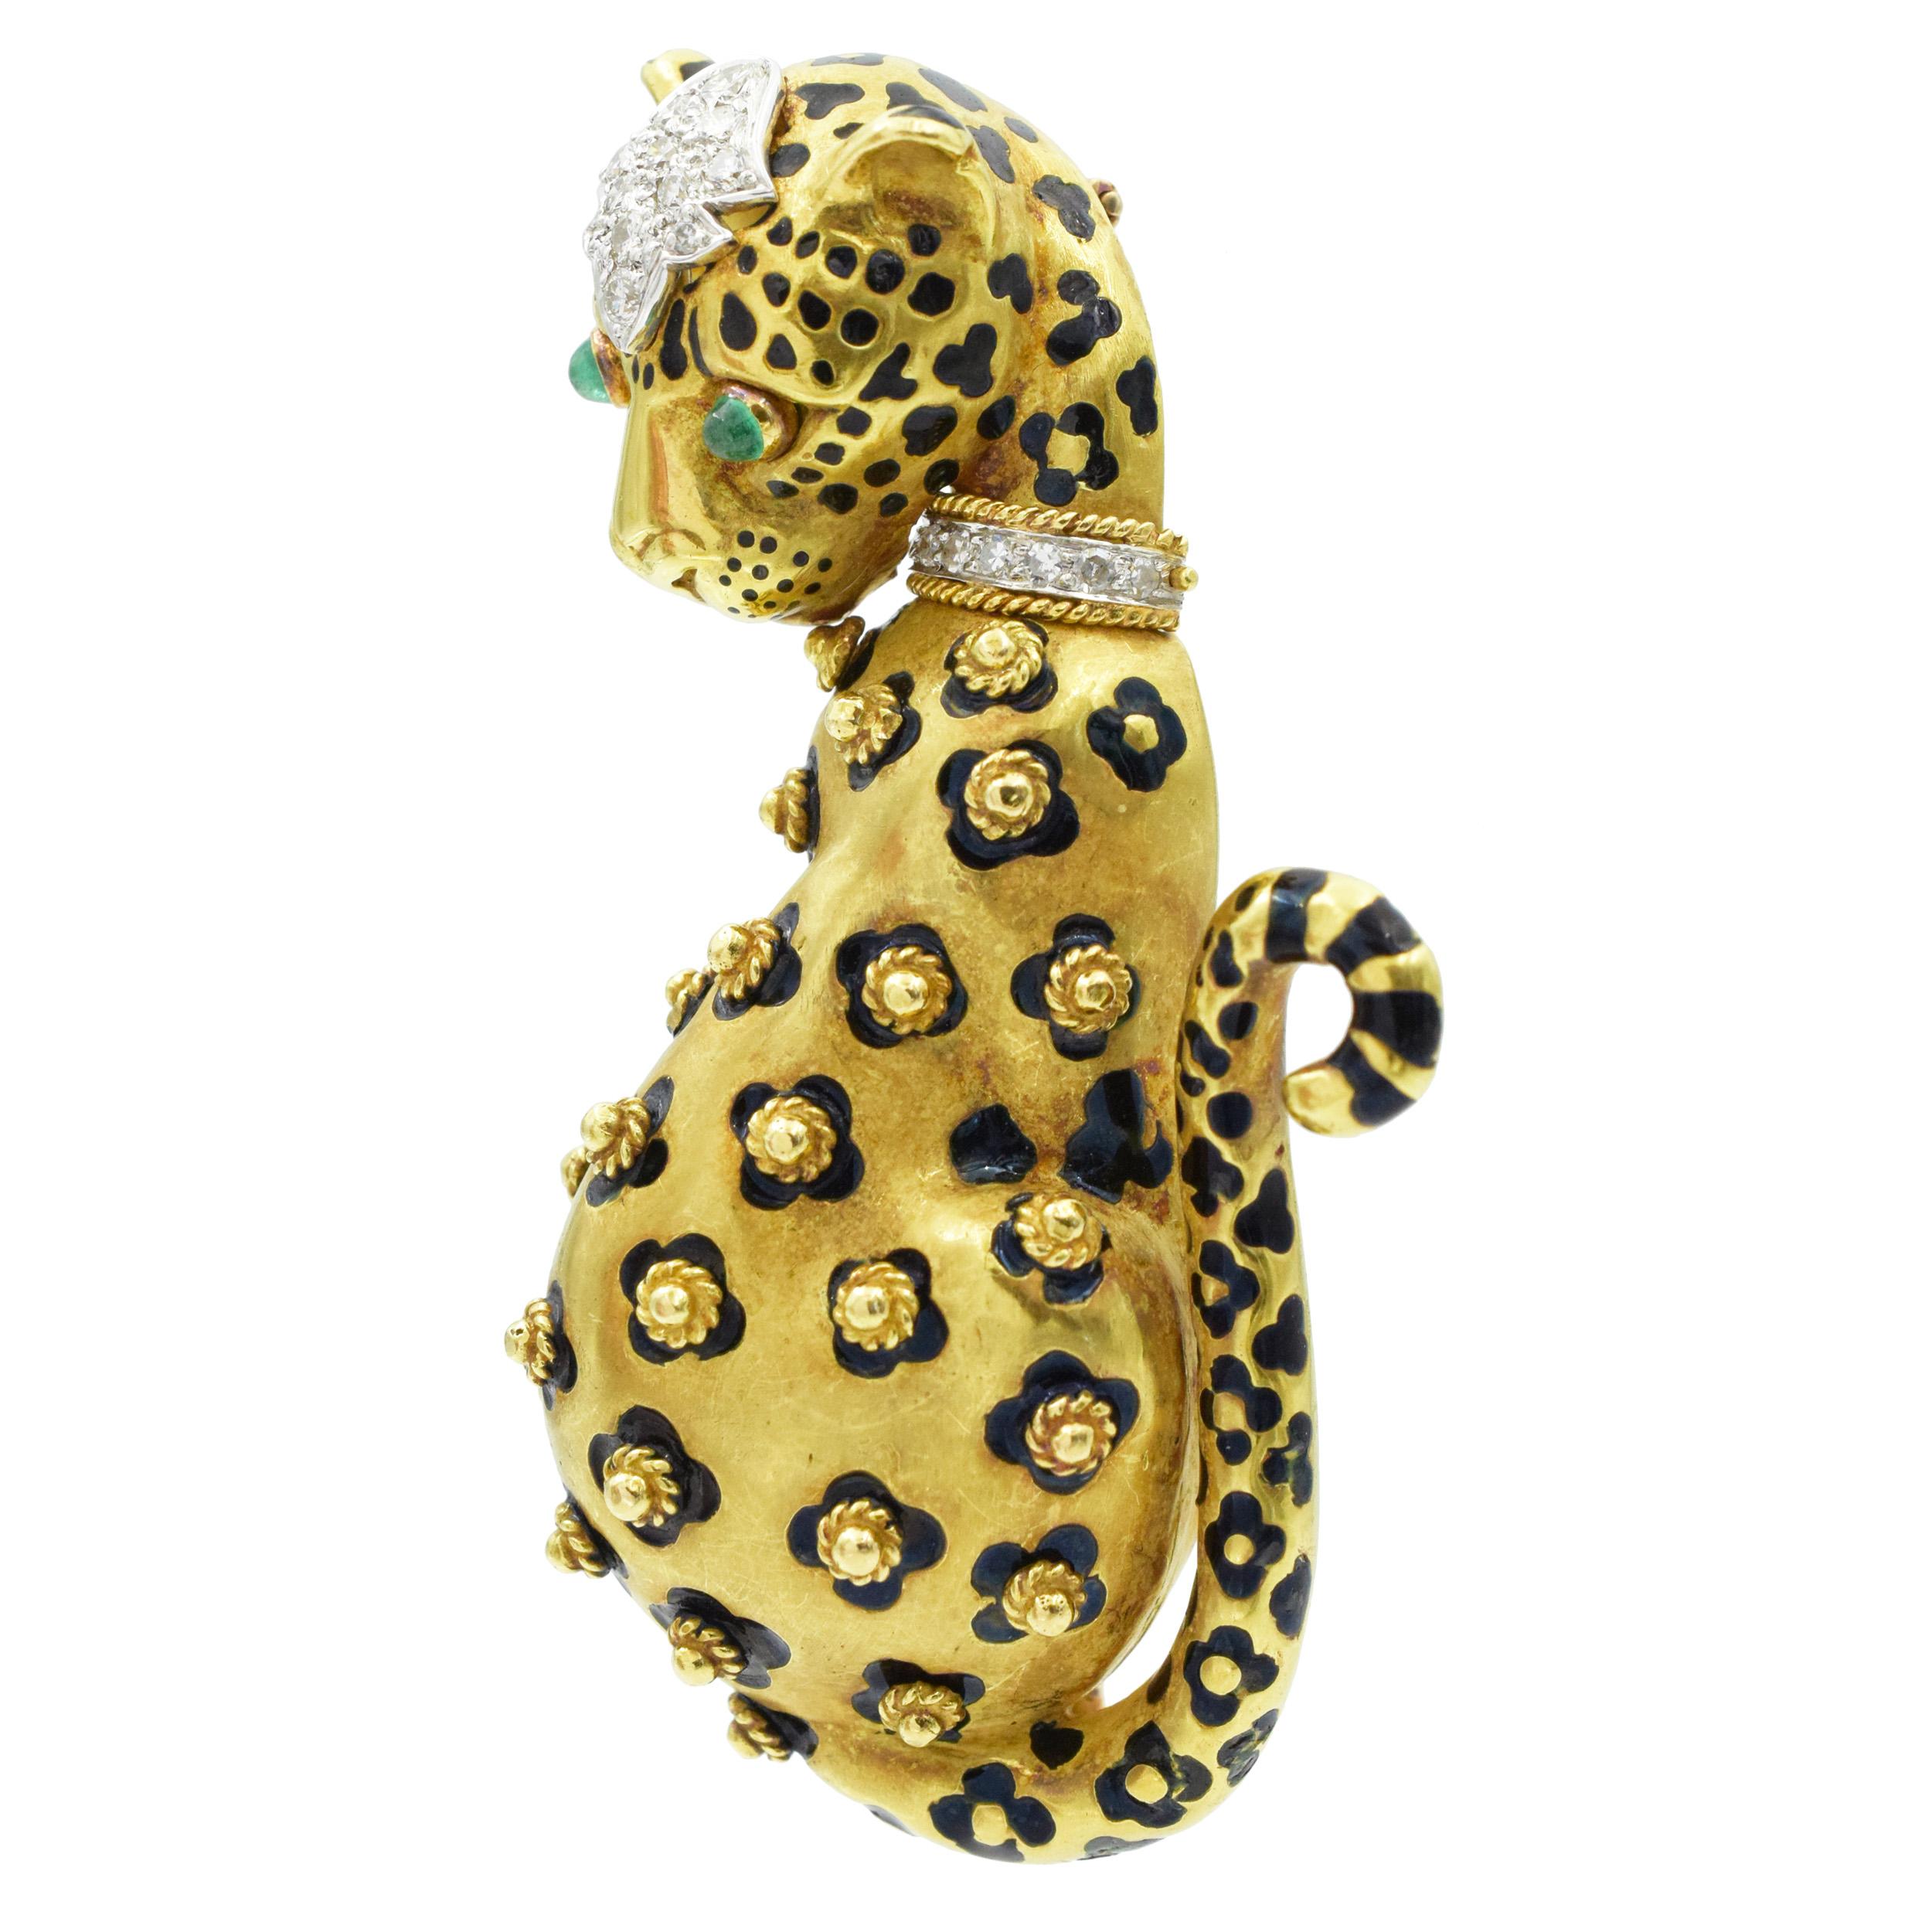   Leopardenbrosche von David Webb  Gold, Diamanten, Emaille und Smaragd für Damen oder Herren